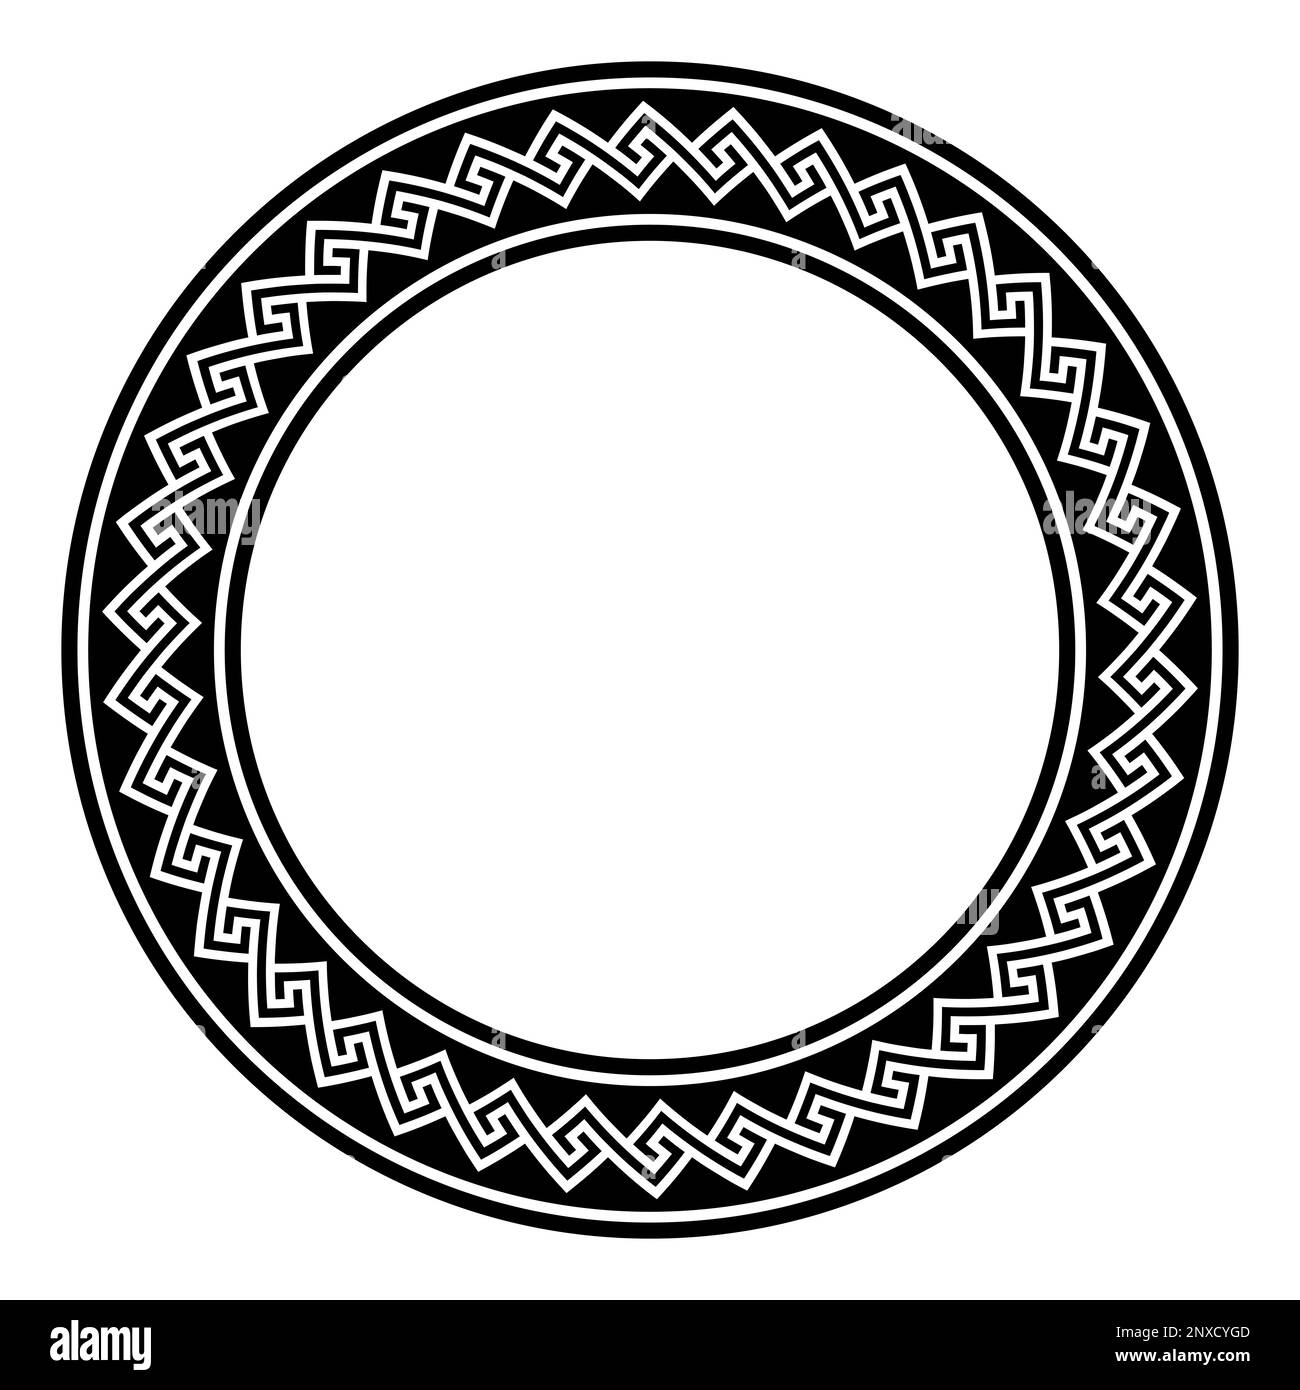 Hopi-Meander-Muster, Kreisrahmen. Dekorativer Rahmen, der durch ein nahtloses und unverbundenes Meander-Muster erzeugt wird. Stockfoto